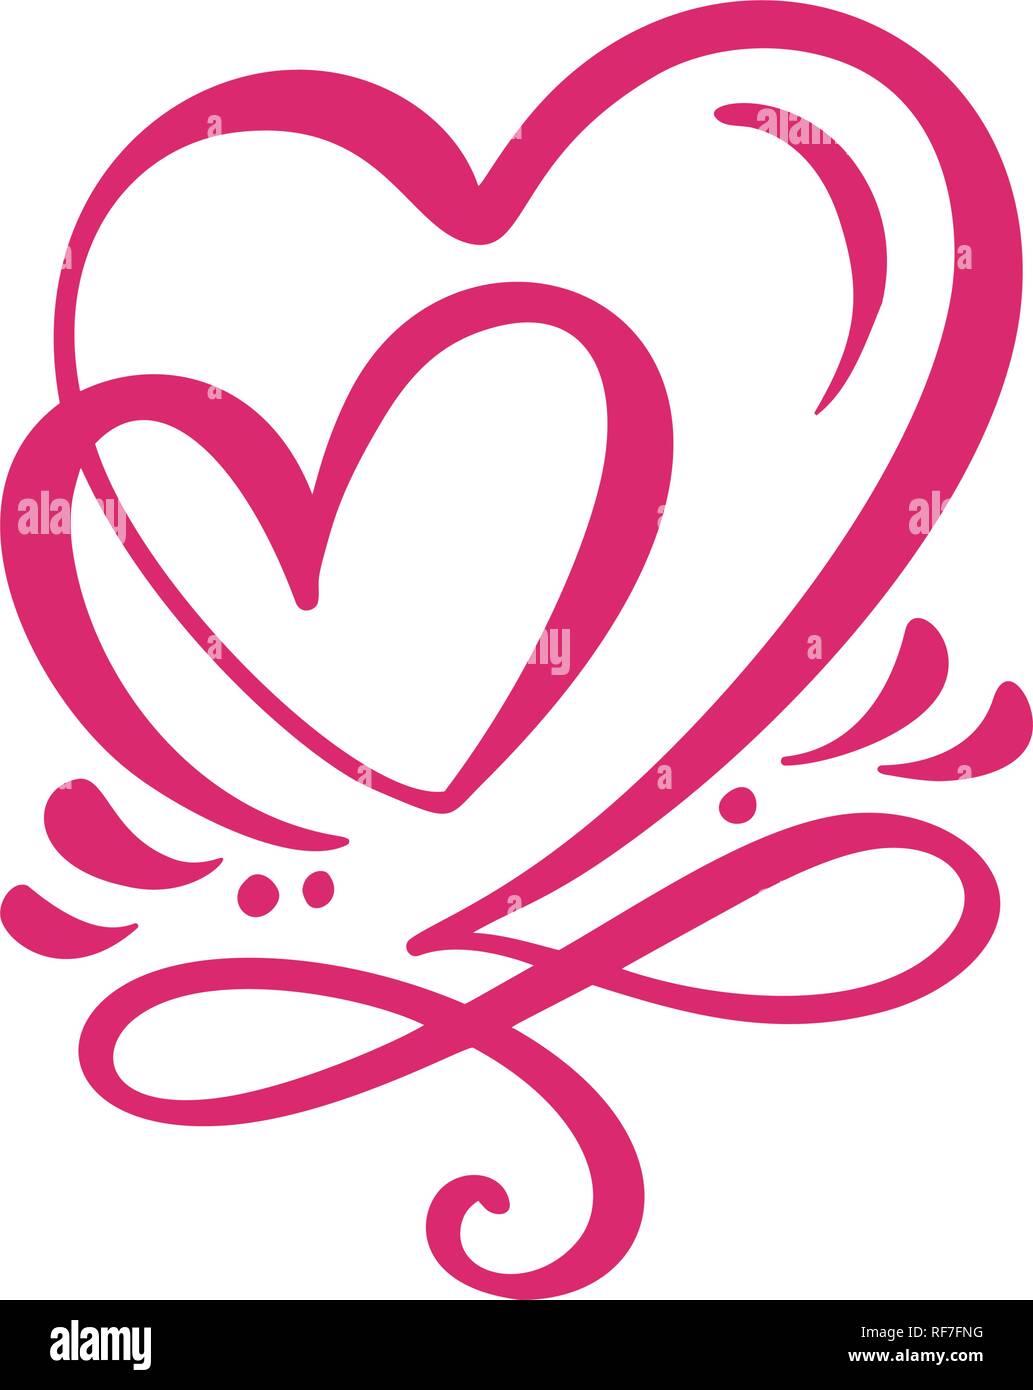 Zwei geliebten kalligrafischen Herzen. Handgefertigte vektor Kalligraphie. Dekor für Grußkarten, Tasse, Foto Overlays, t-shirt Drucken, Flyer, Plakat design Stock Vektor